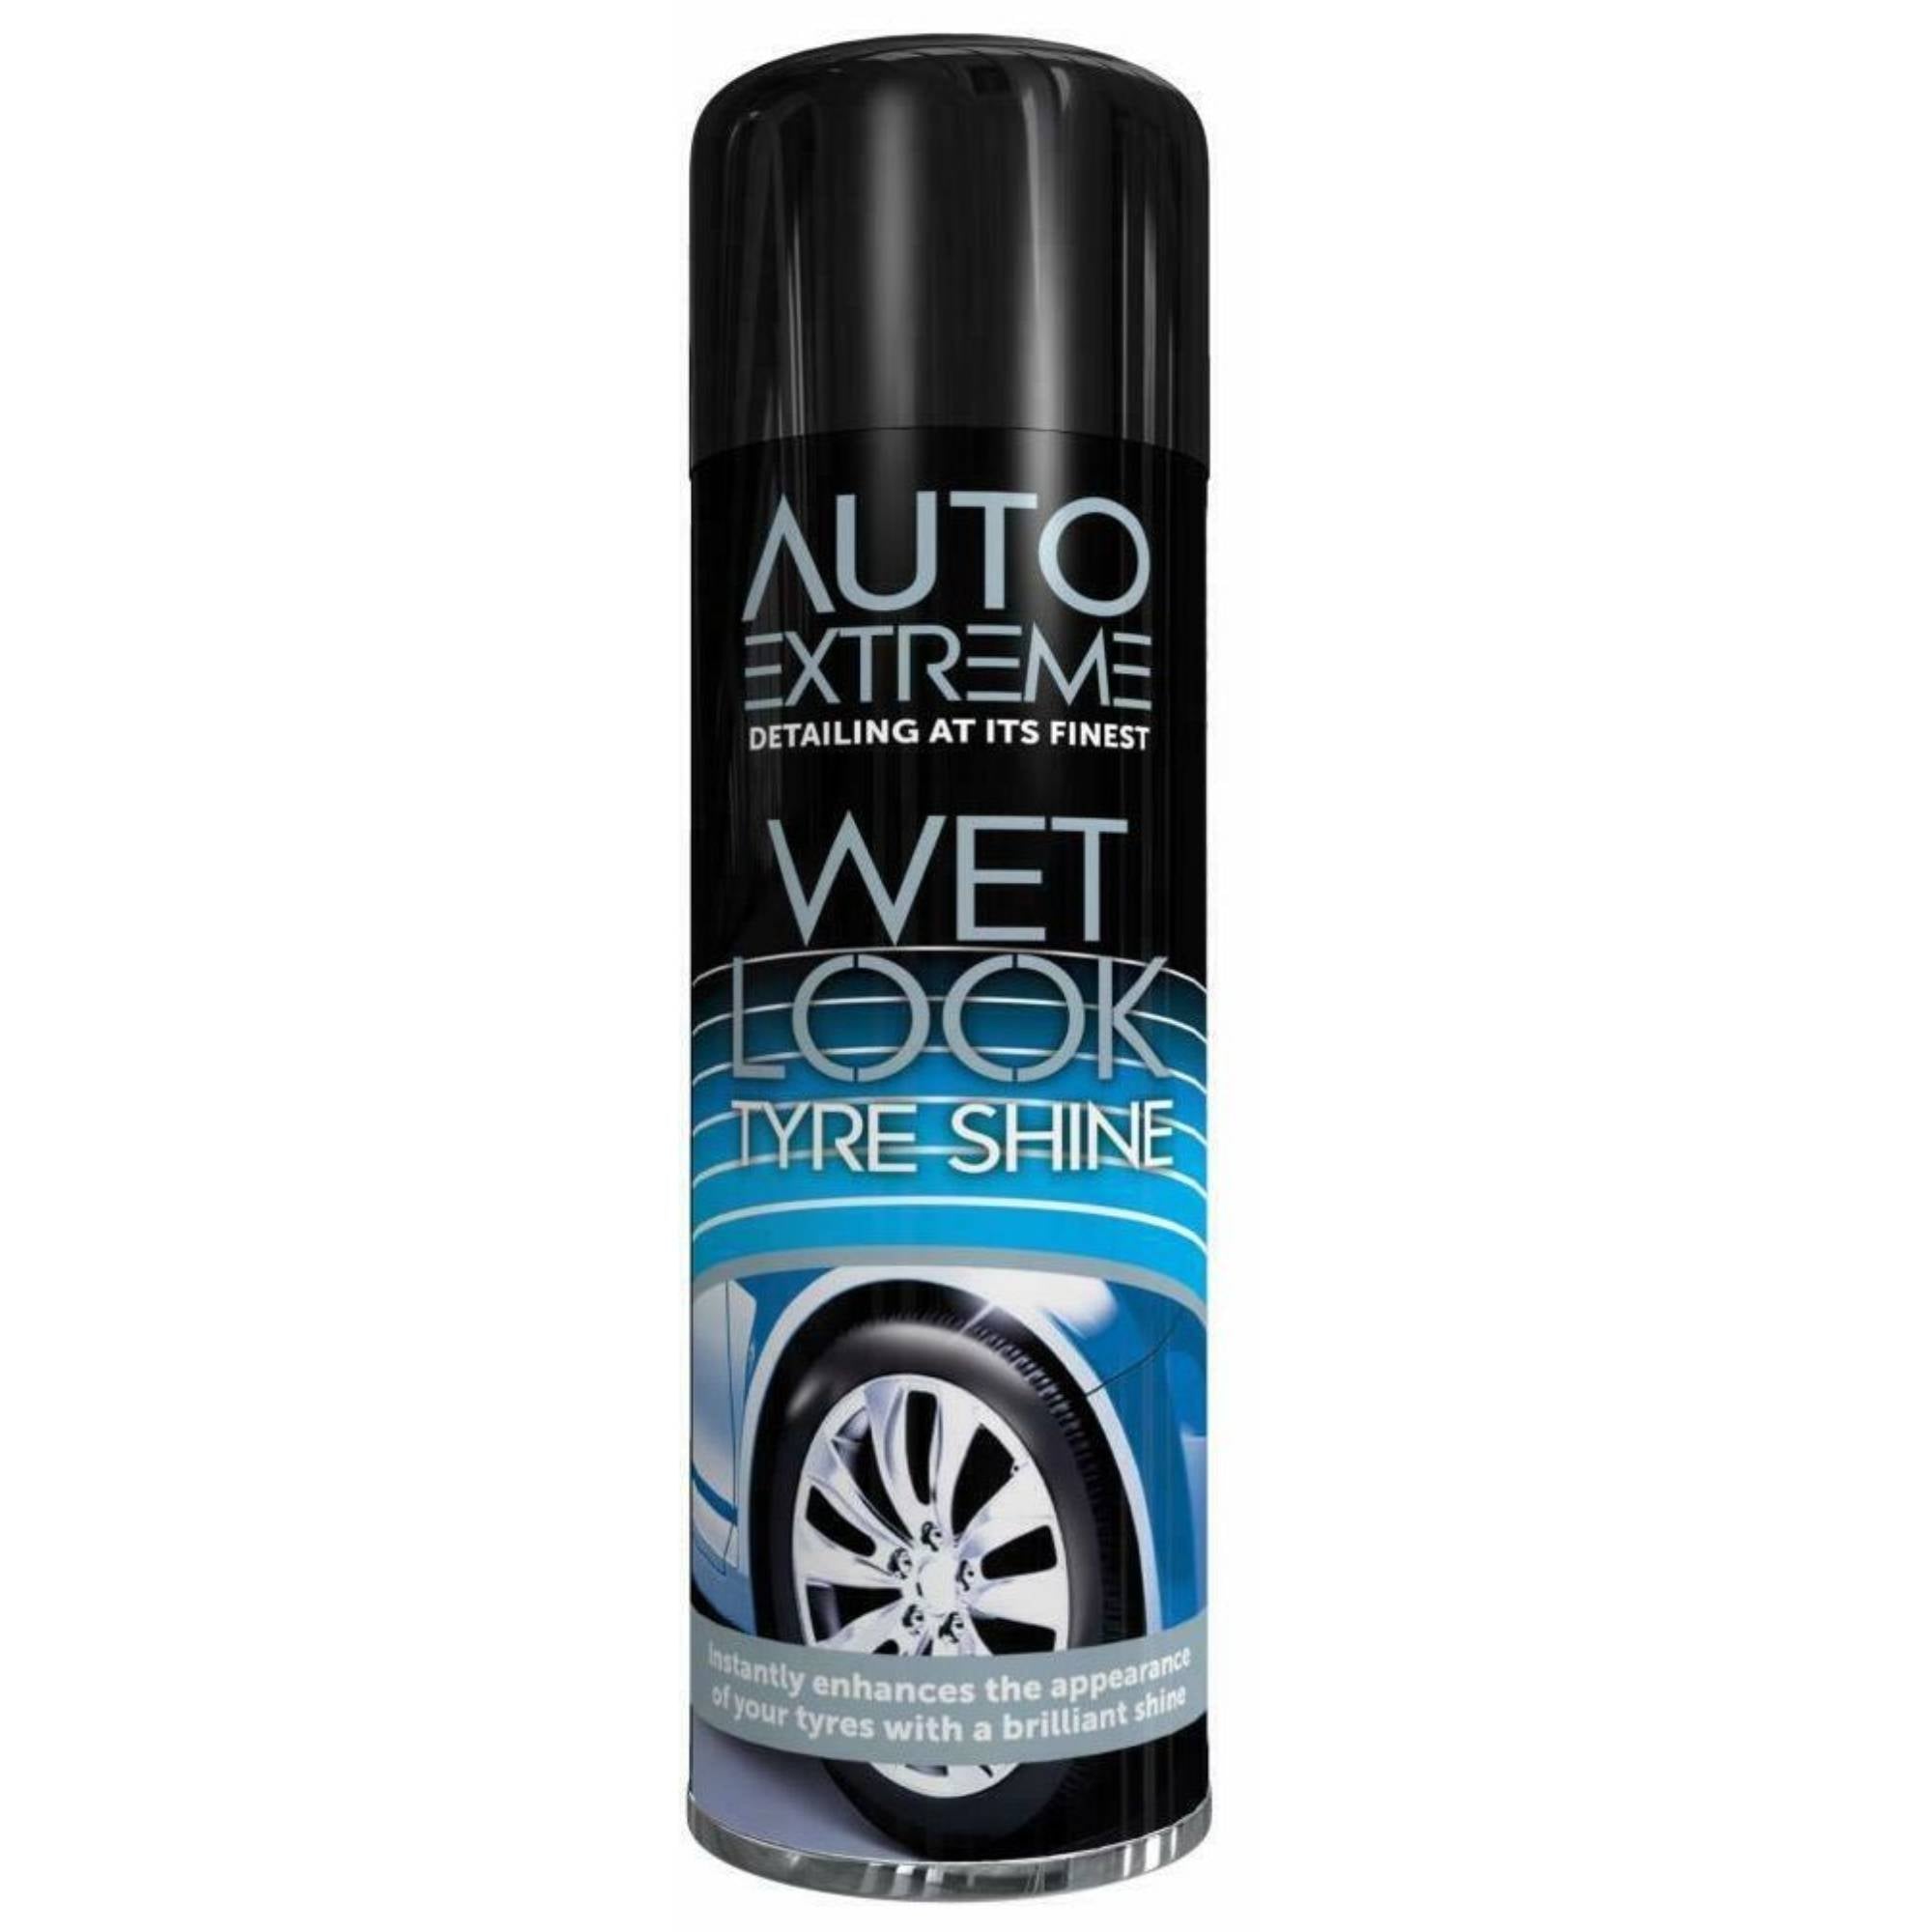 Auto Extreme Wet Look Tyre Shine 300ml